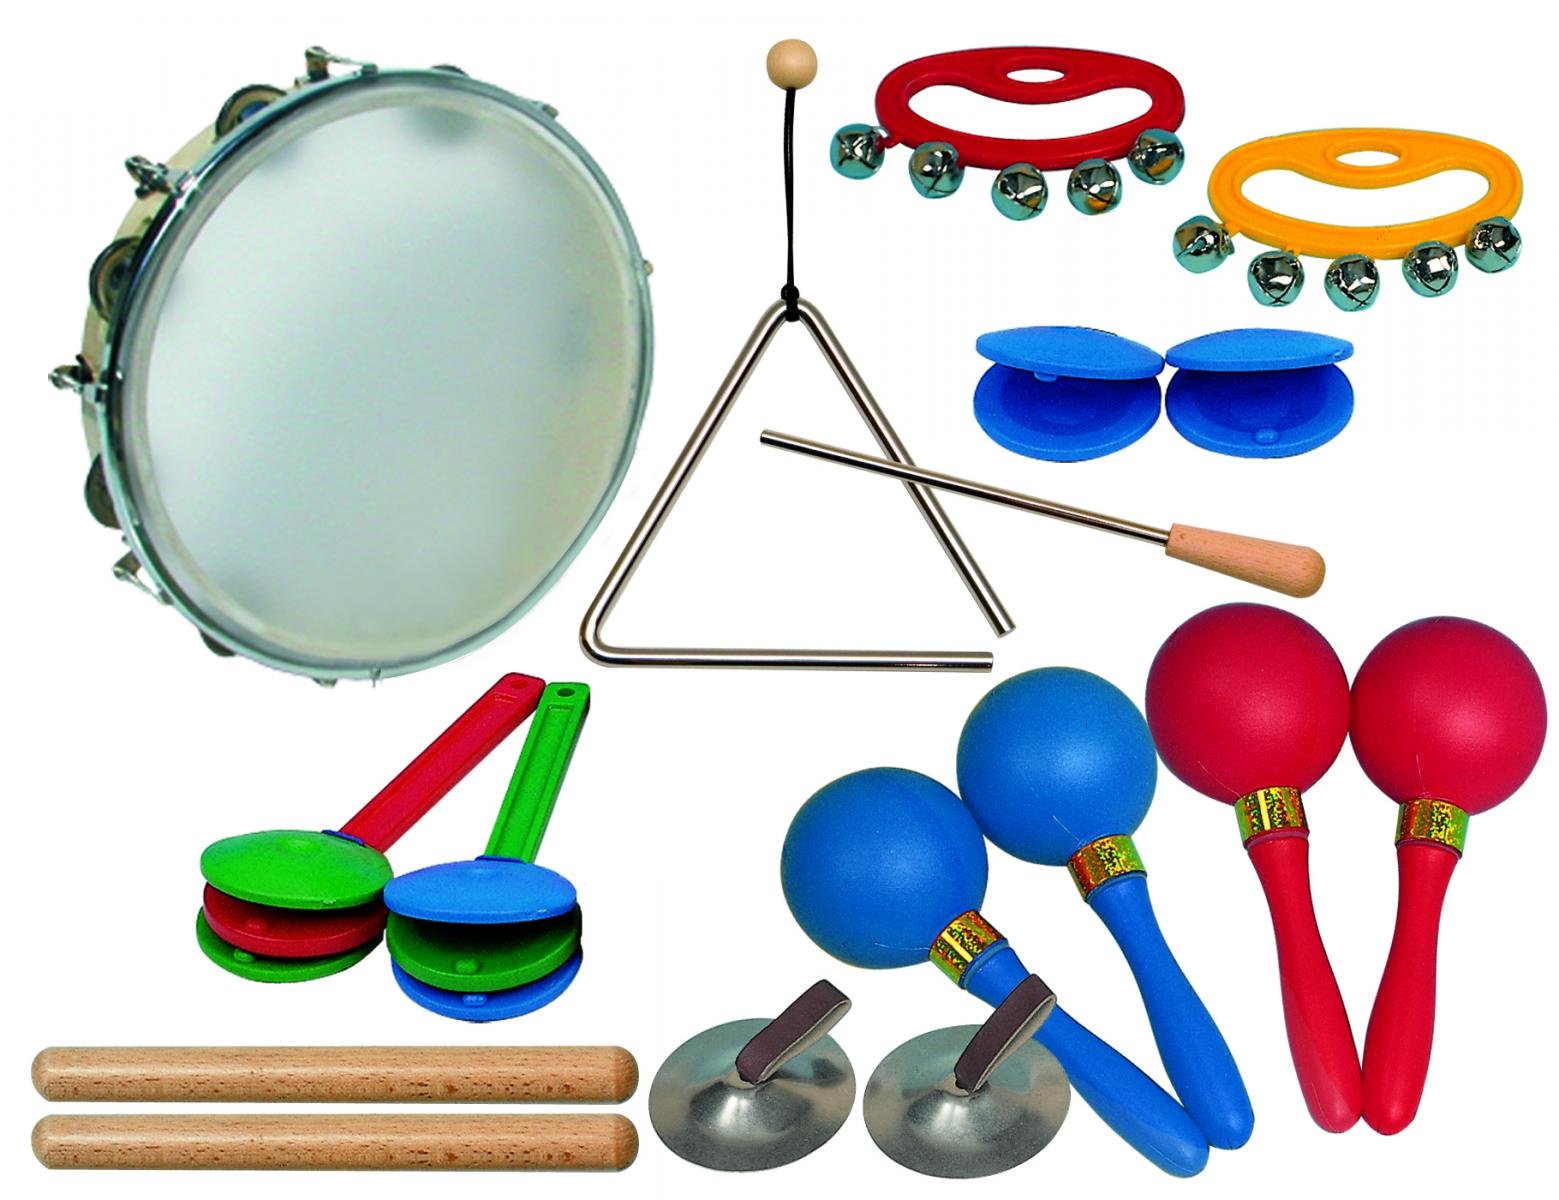 Музыкальный инструмент на е. Детские музыкальные инструменты. Набор музыкальных инструментов для детского сада. Игрушечные музыкальные инструменты. Ударные музыкальные инструменты.